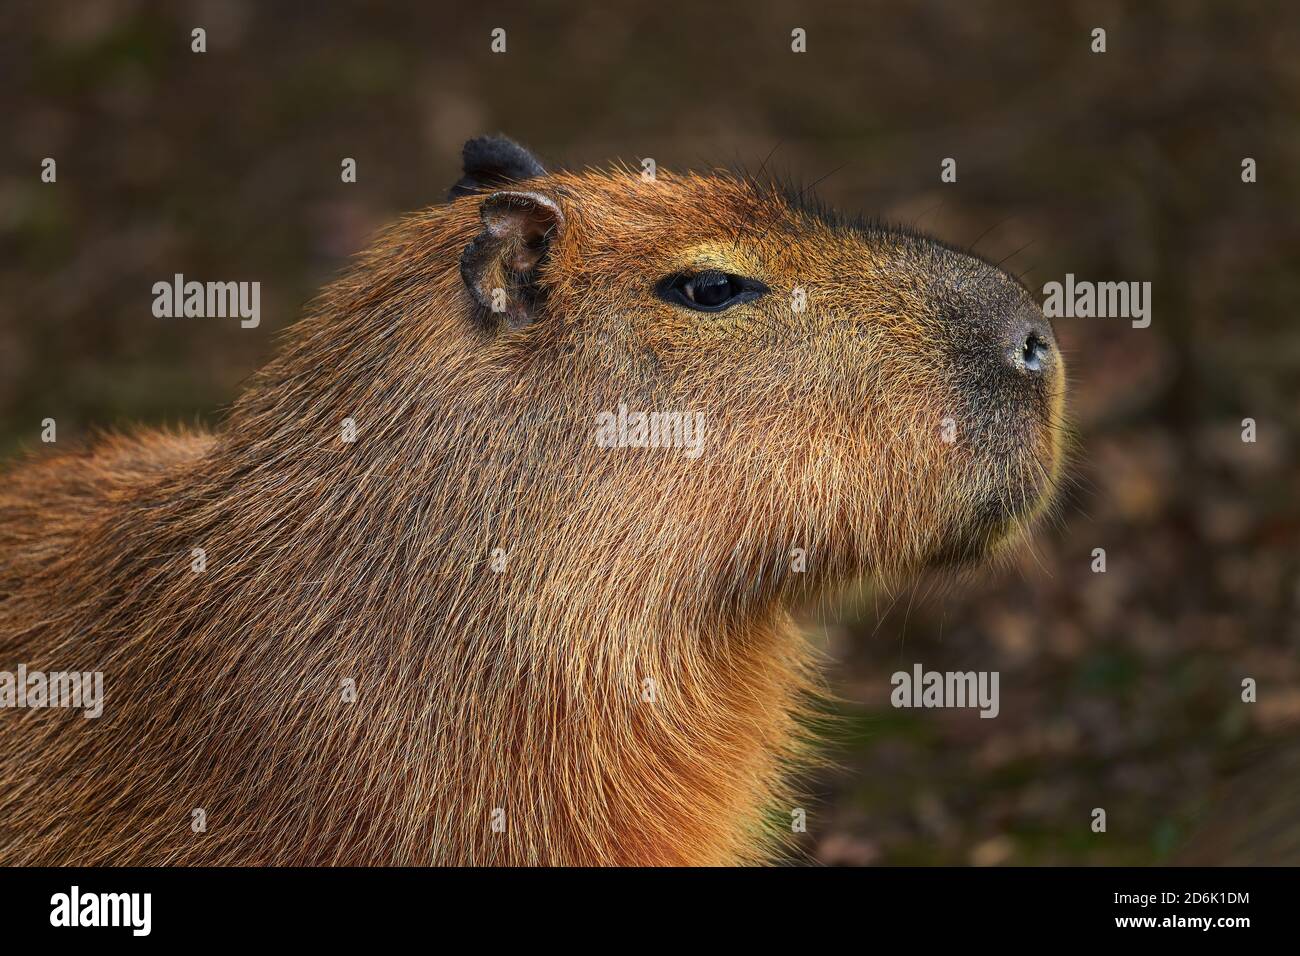 Capybara - Hydrochoerus hydrochaeris, retrato de roedor gigante de sabanas sudamericanas, pantanos y praderas, Brasil. Foto de stock